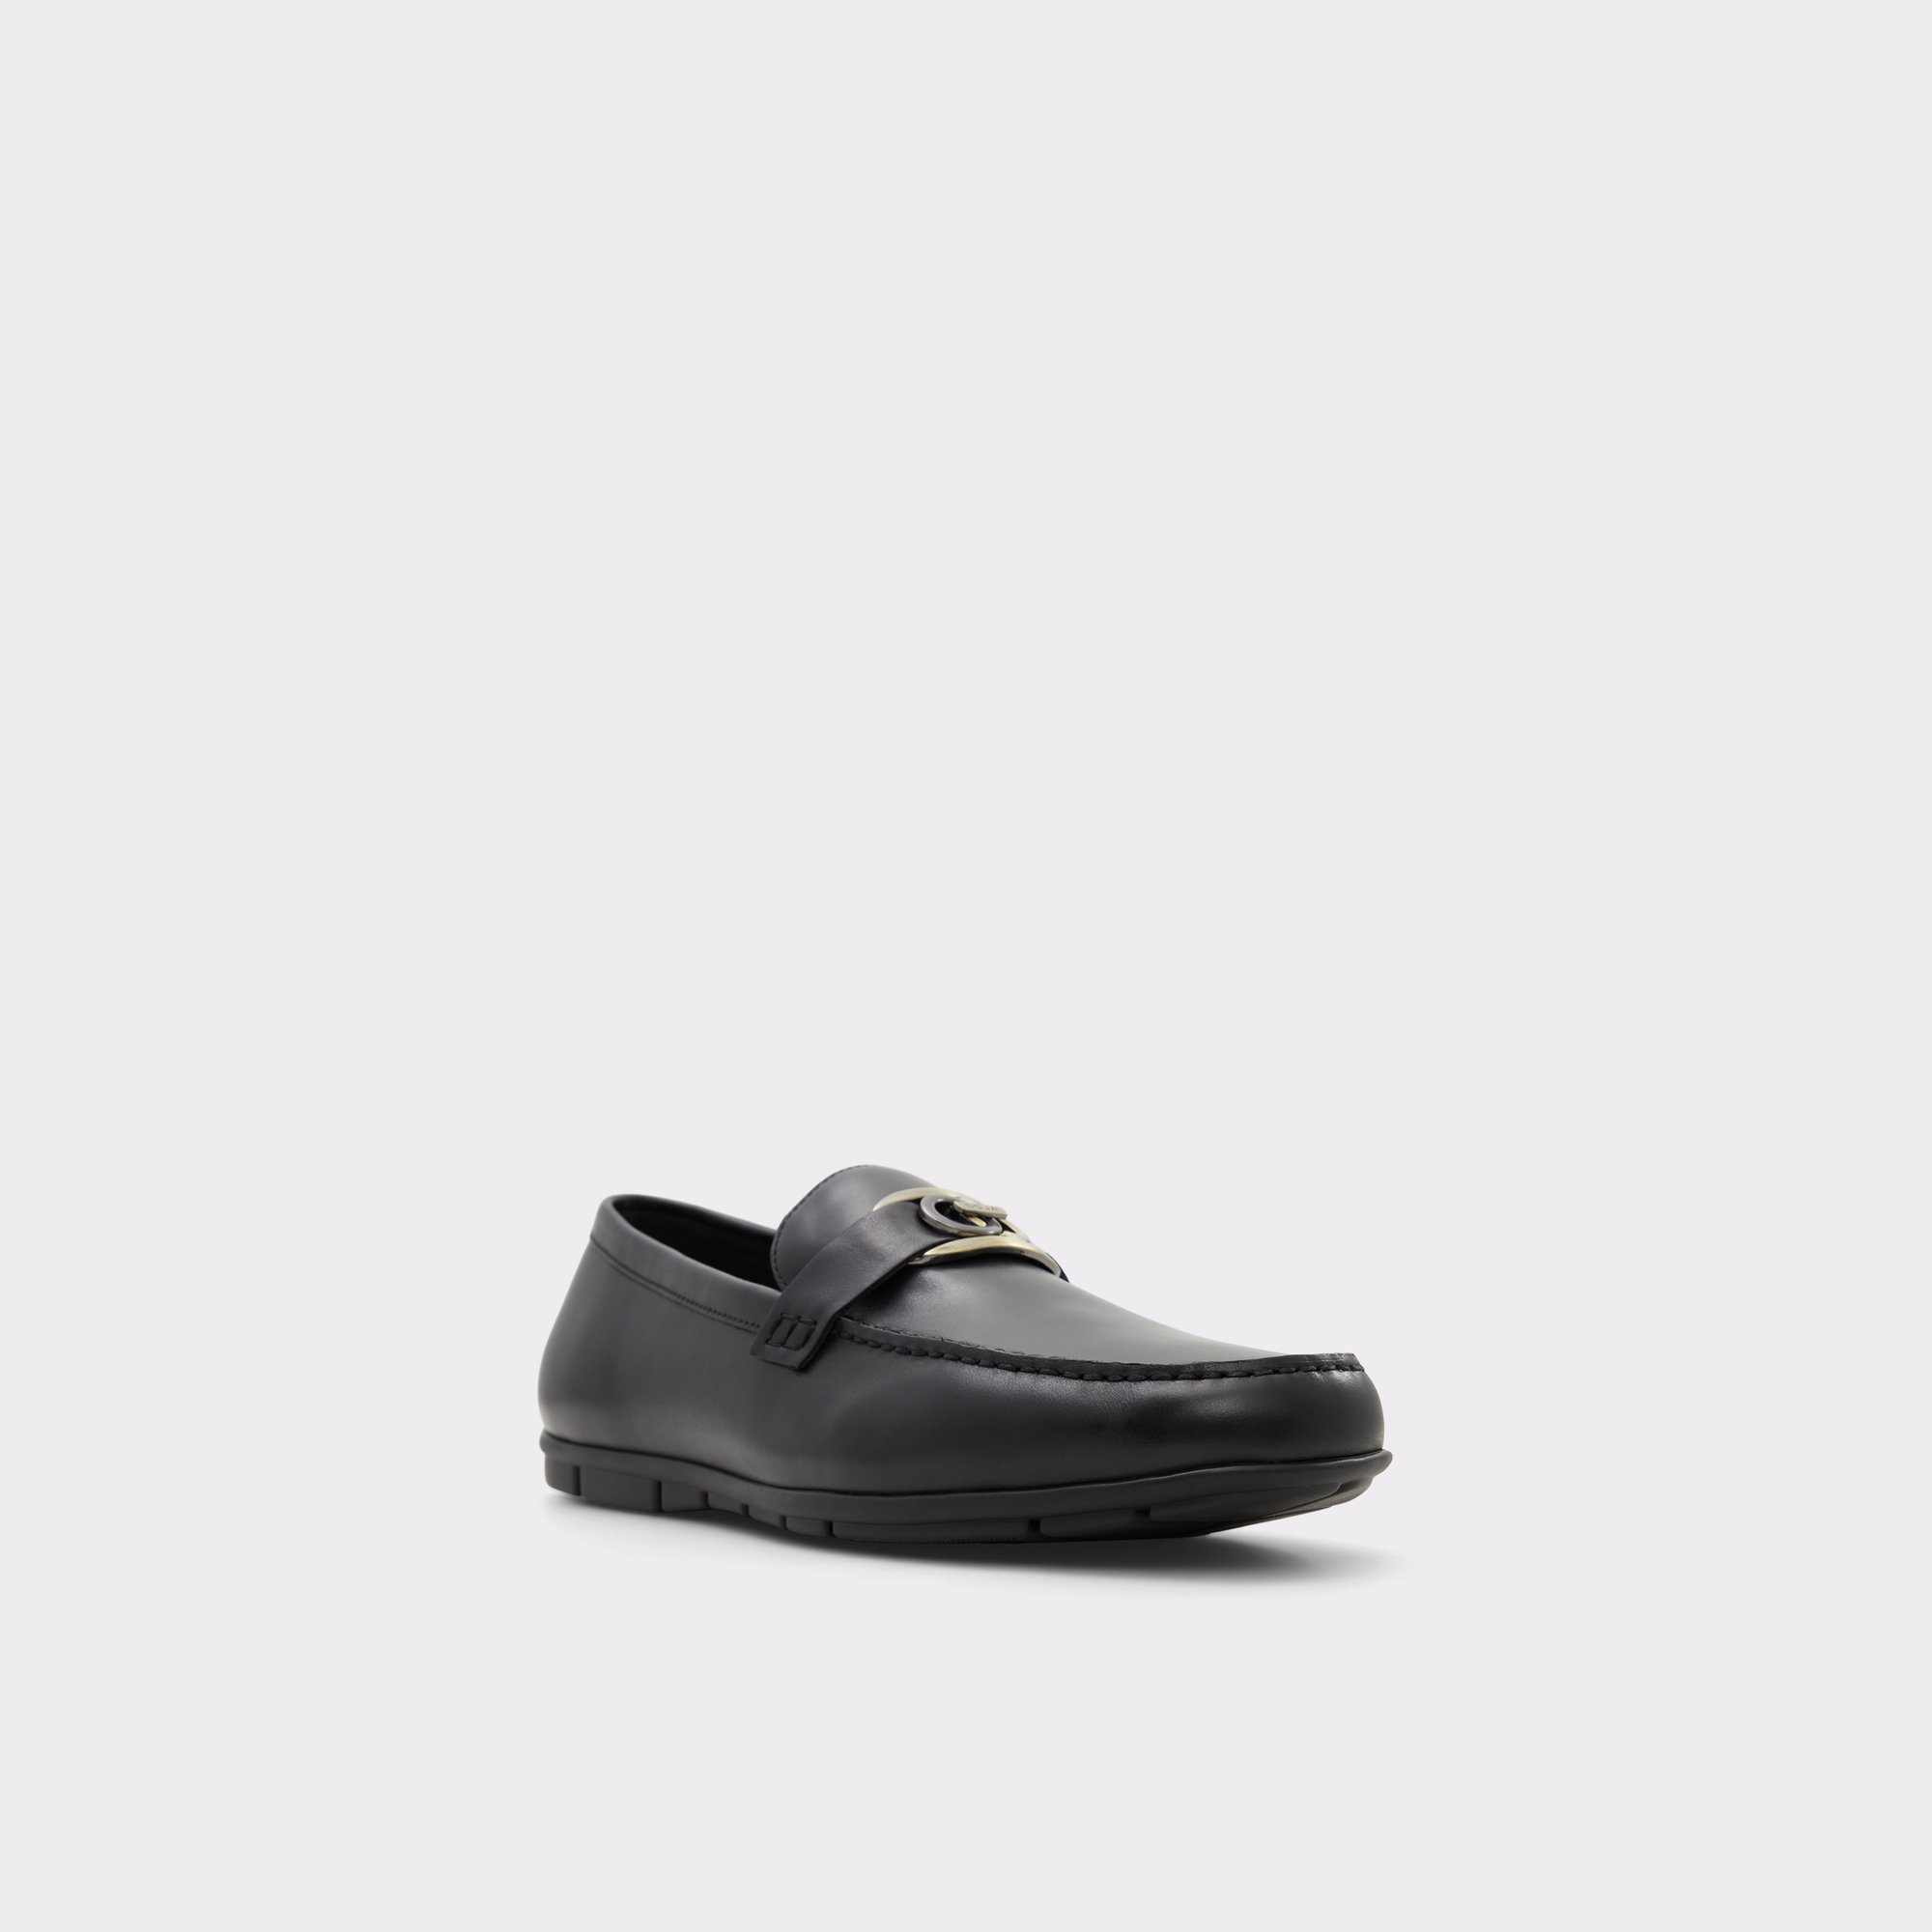 Haan Black Men's Casual Shoes | ALDO Canada